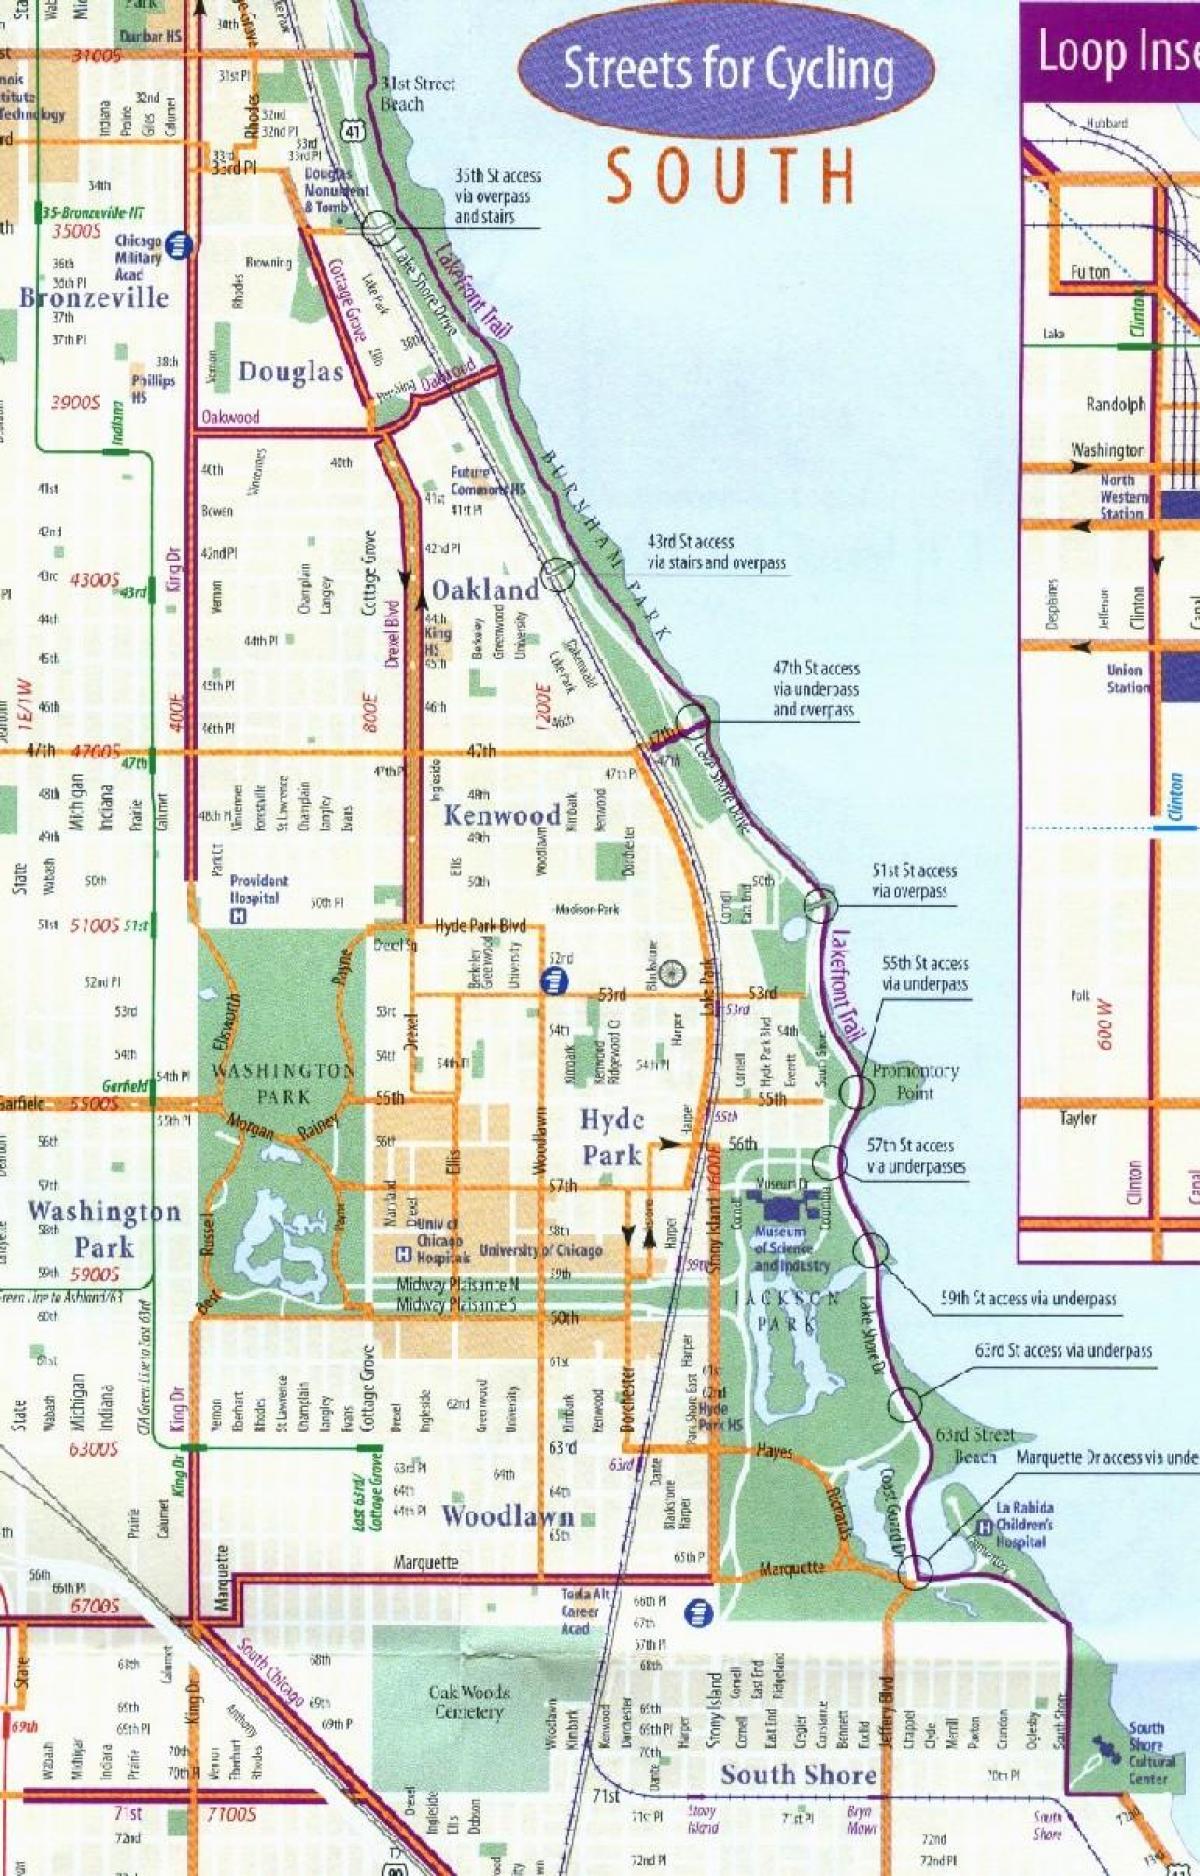 Чикаго велосипед лејн мапа